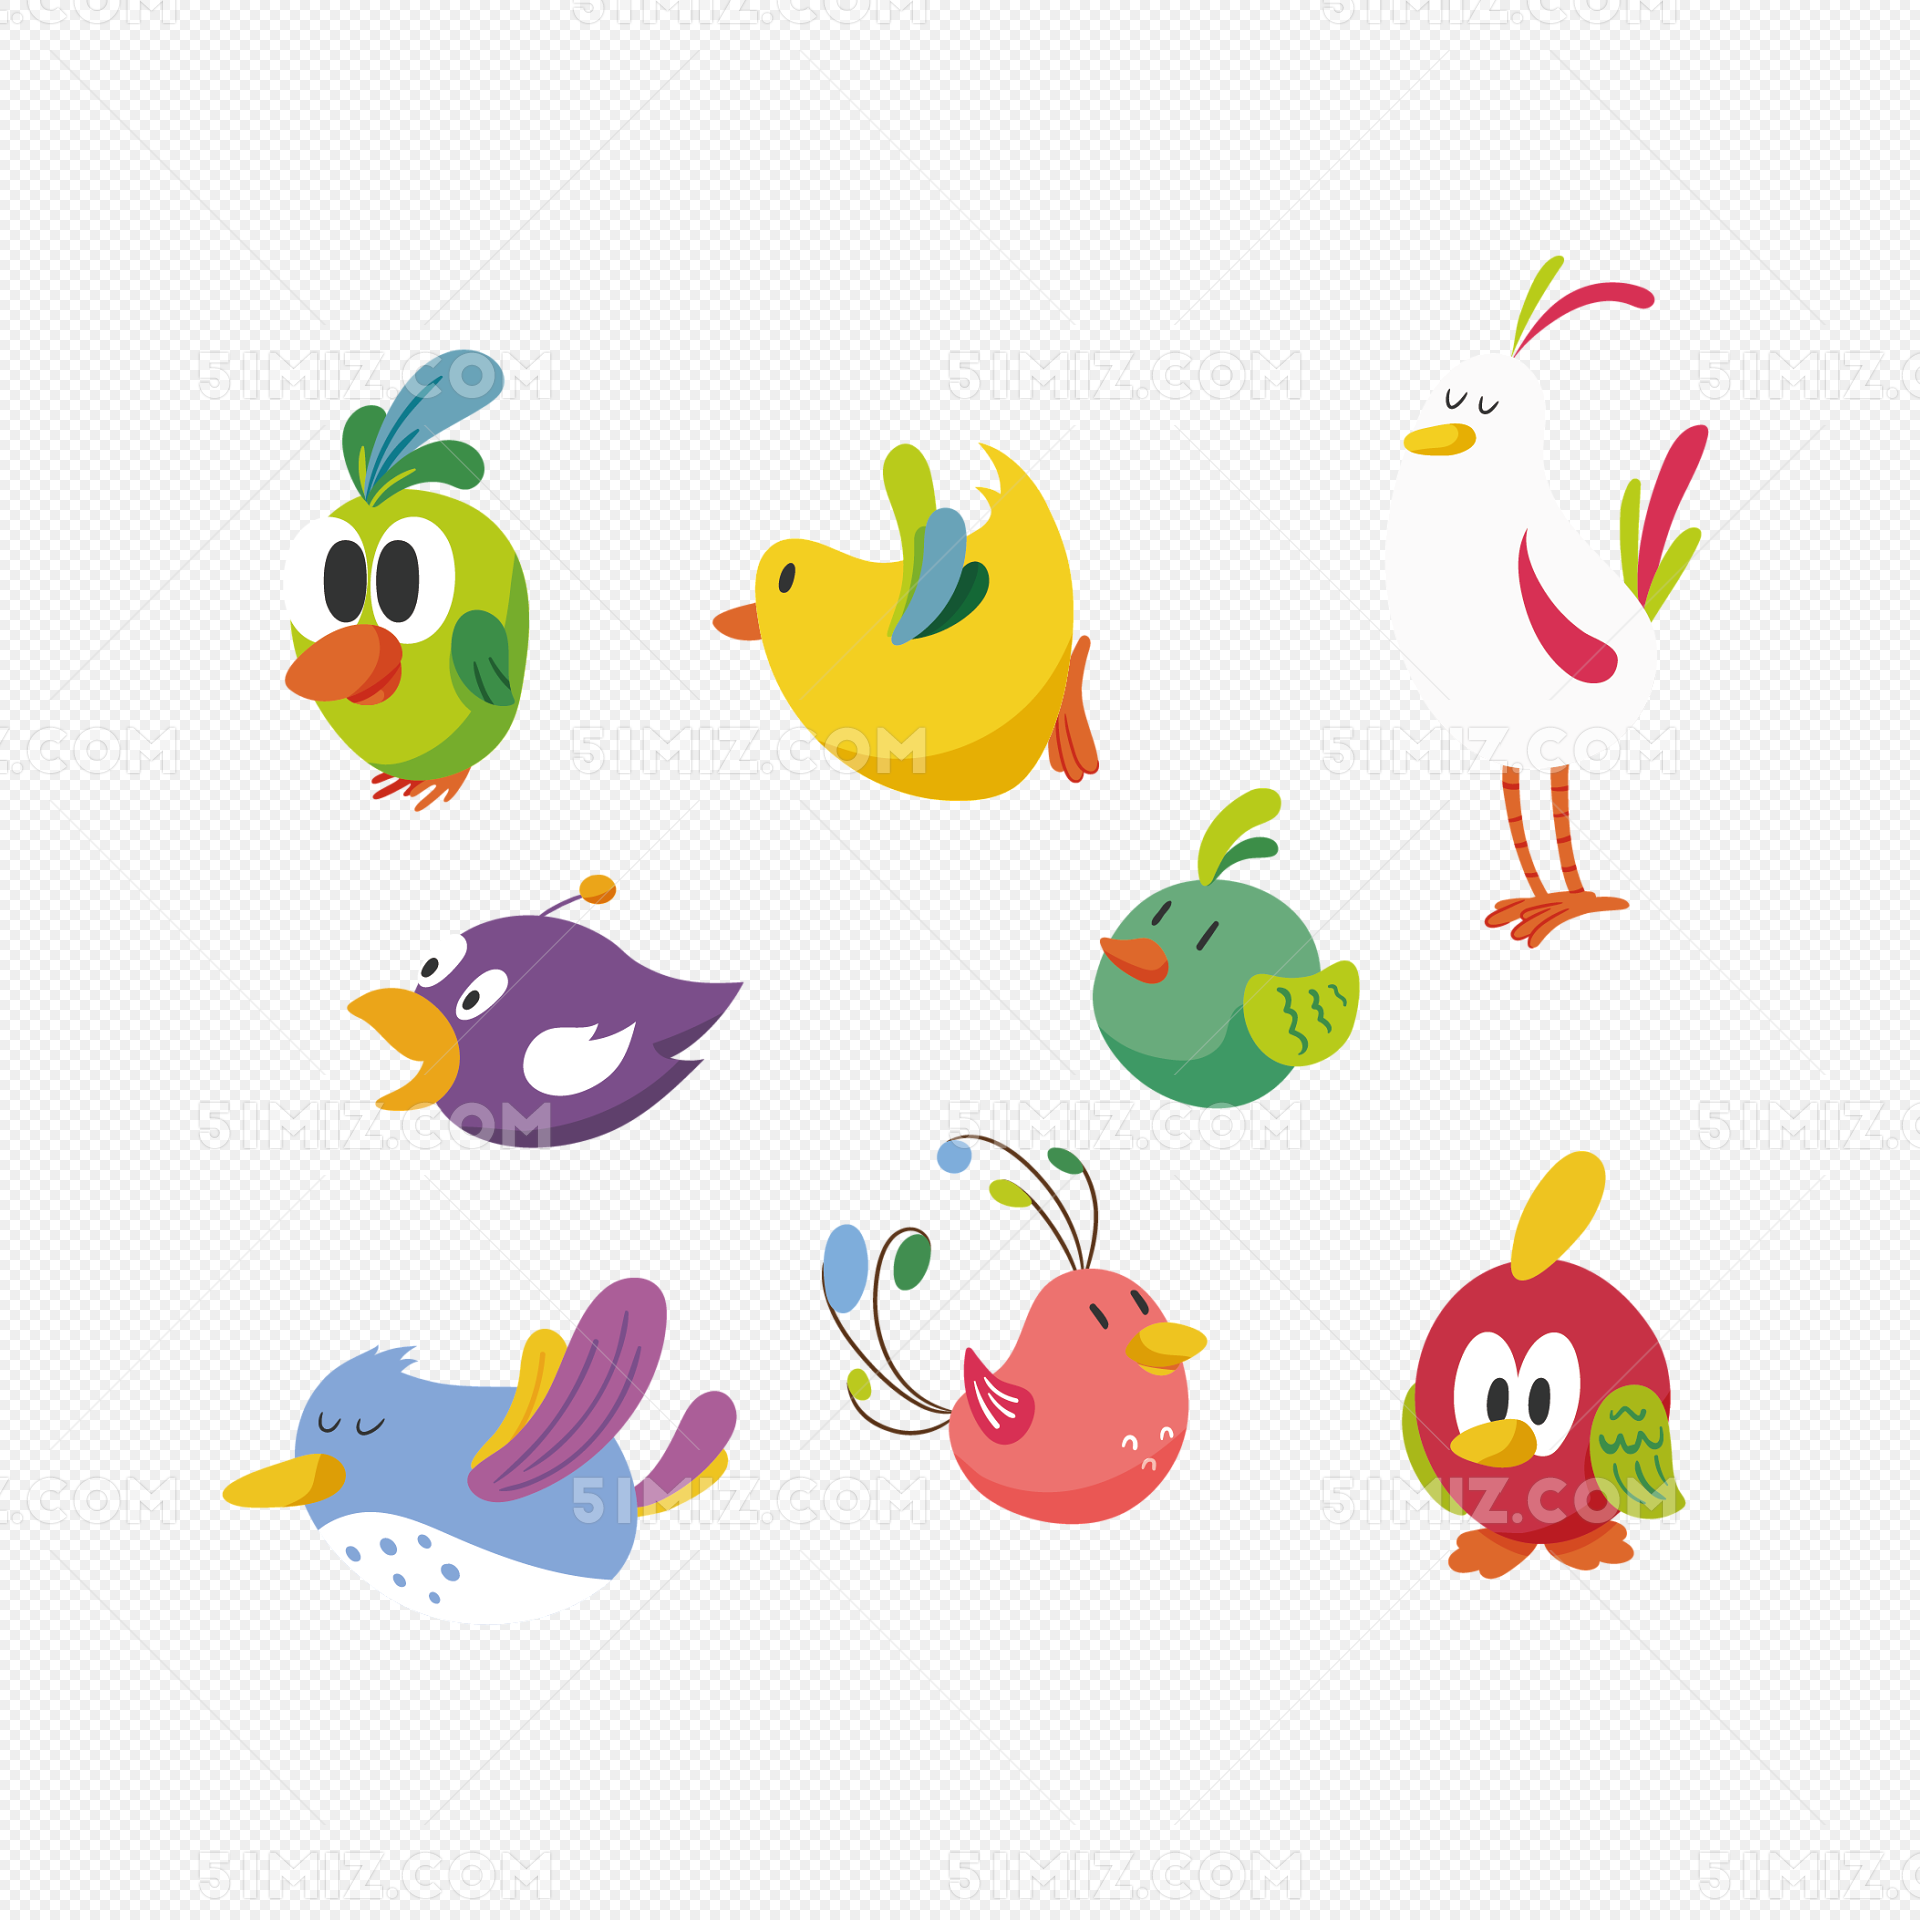 矢量彩色卡通可爱小鸟图片素材免费下载 - 觅知网